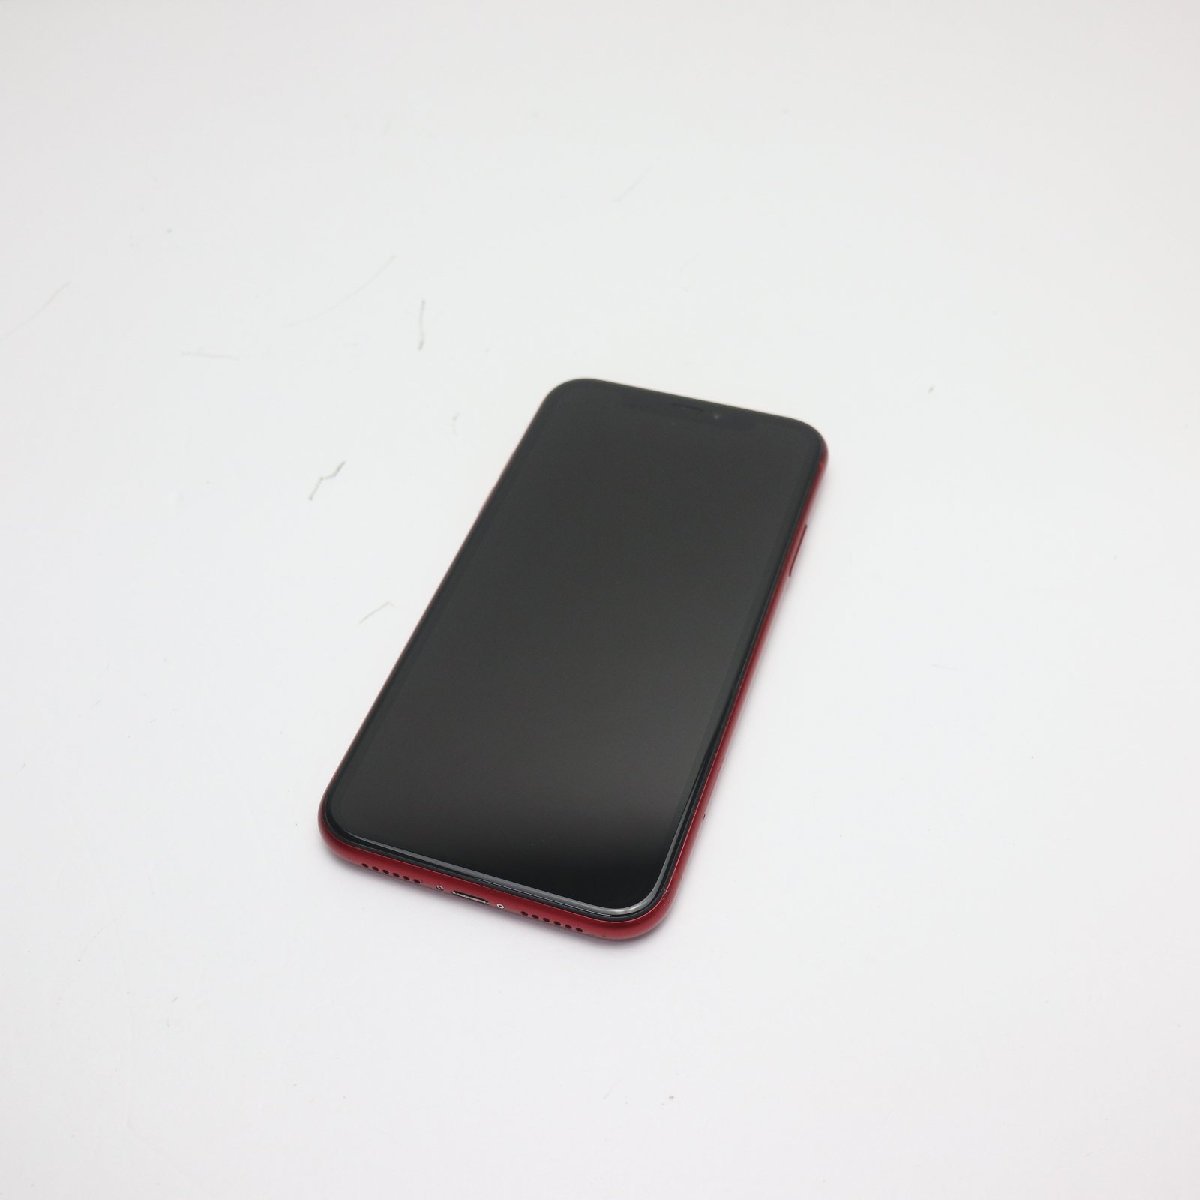 超美品 SIMフリー iPhoneXR 64GB レッド RED スマホ 白ロム 即日発送